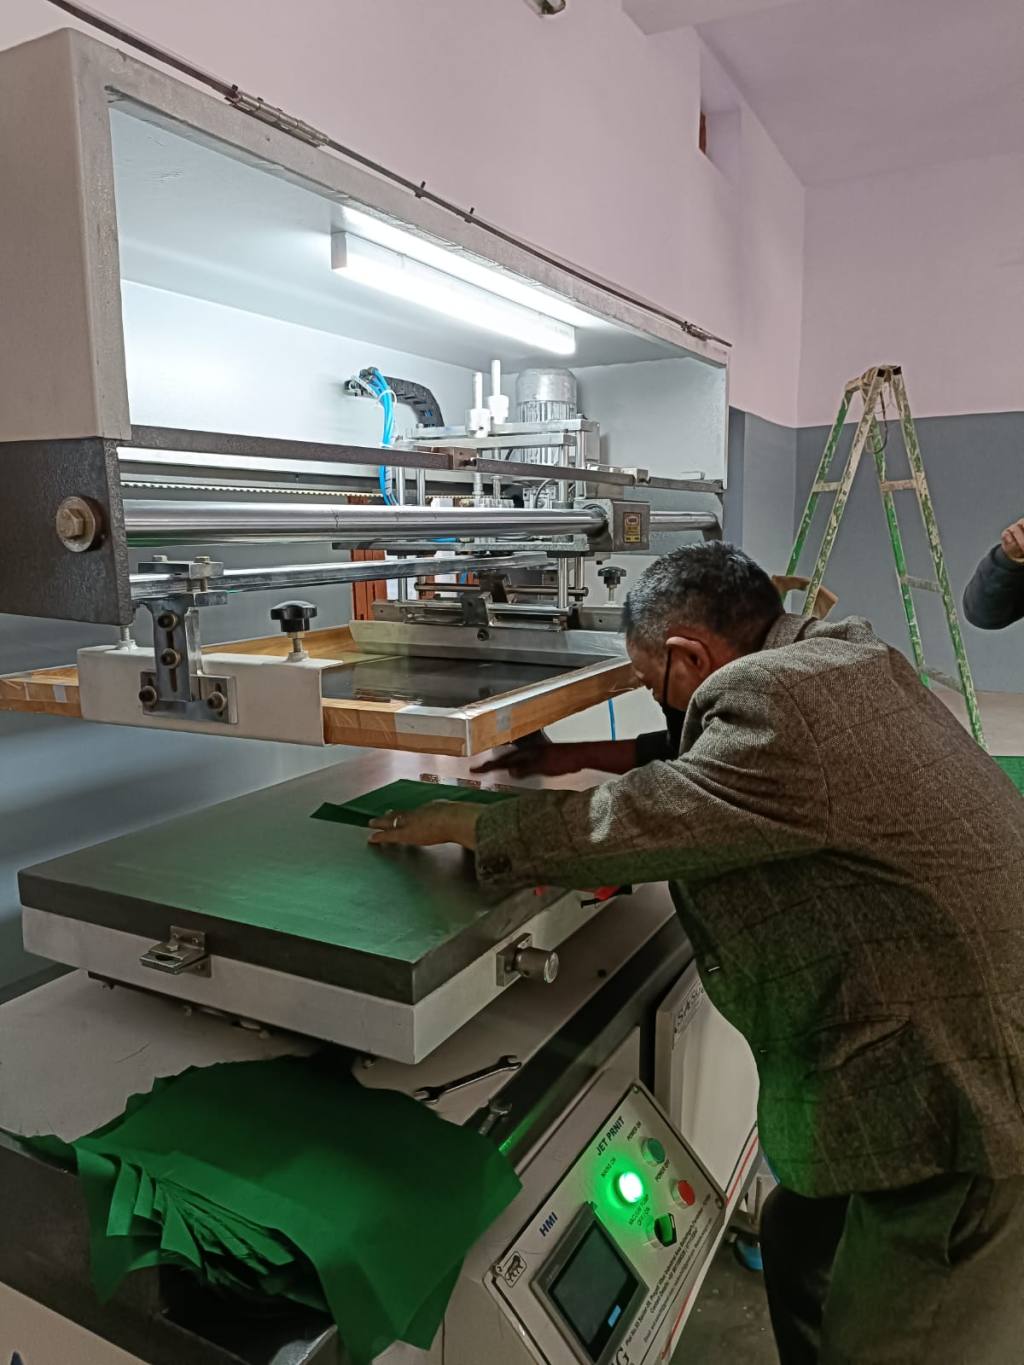 neue Siebdruckmaschine im Einsatz zum Bedrucken tibetischer Gebetsfahnen